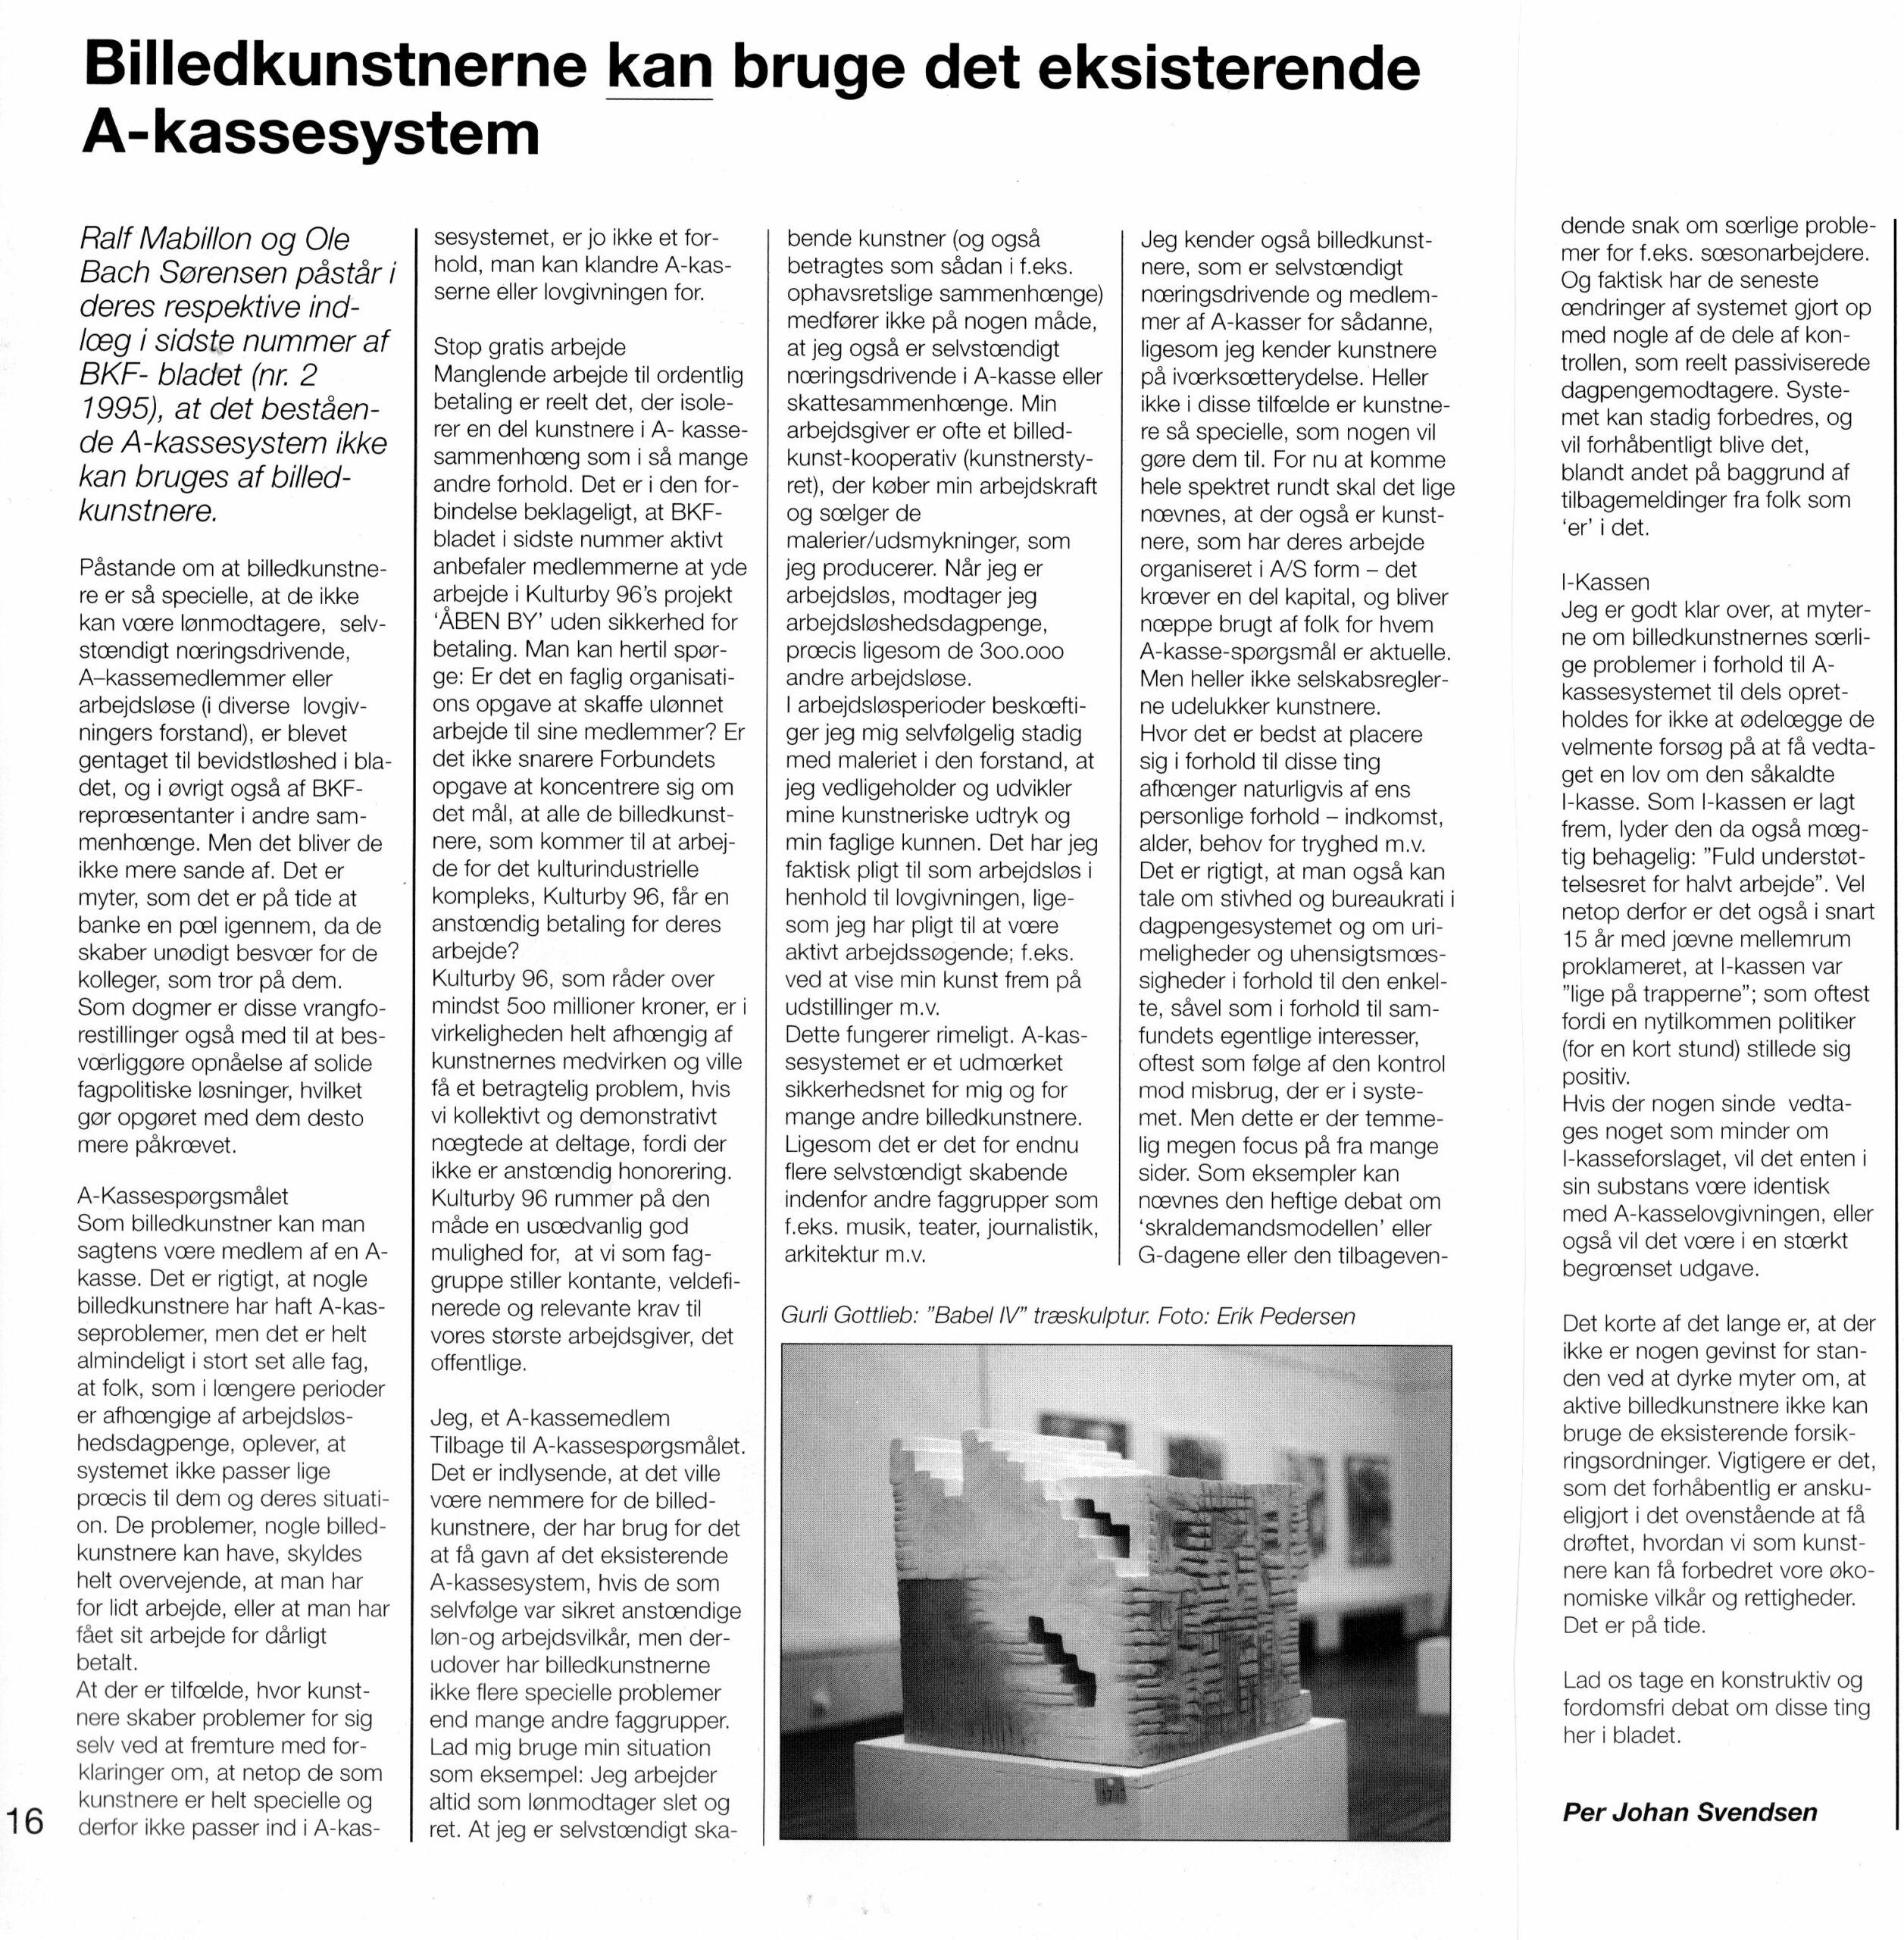 Billedkunstnerne kan bruge det eksisterende A-Kassesystem. Debatindlæg. Per Johan Svendsen. Fagbladet Billedkunstneren nr. 3 Juni -Juli (Billedkunstnernes Forbund).